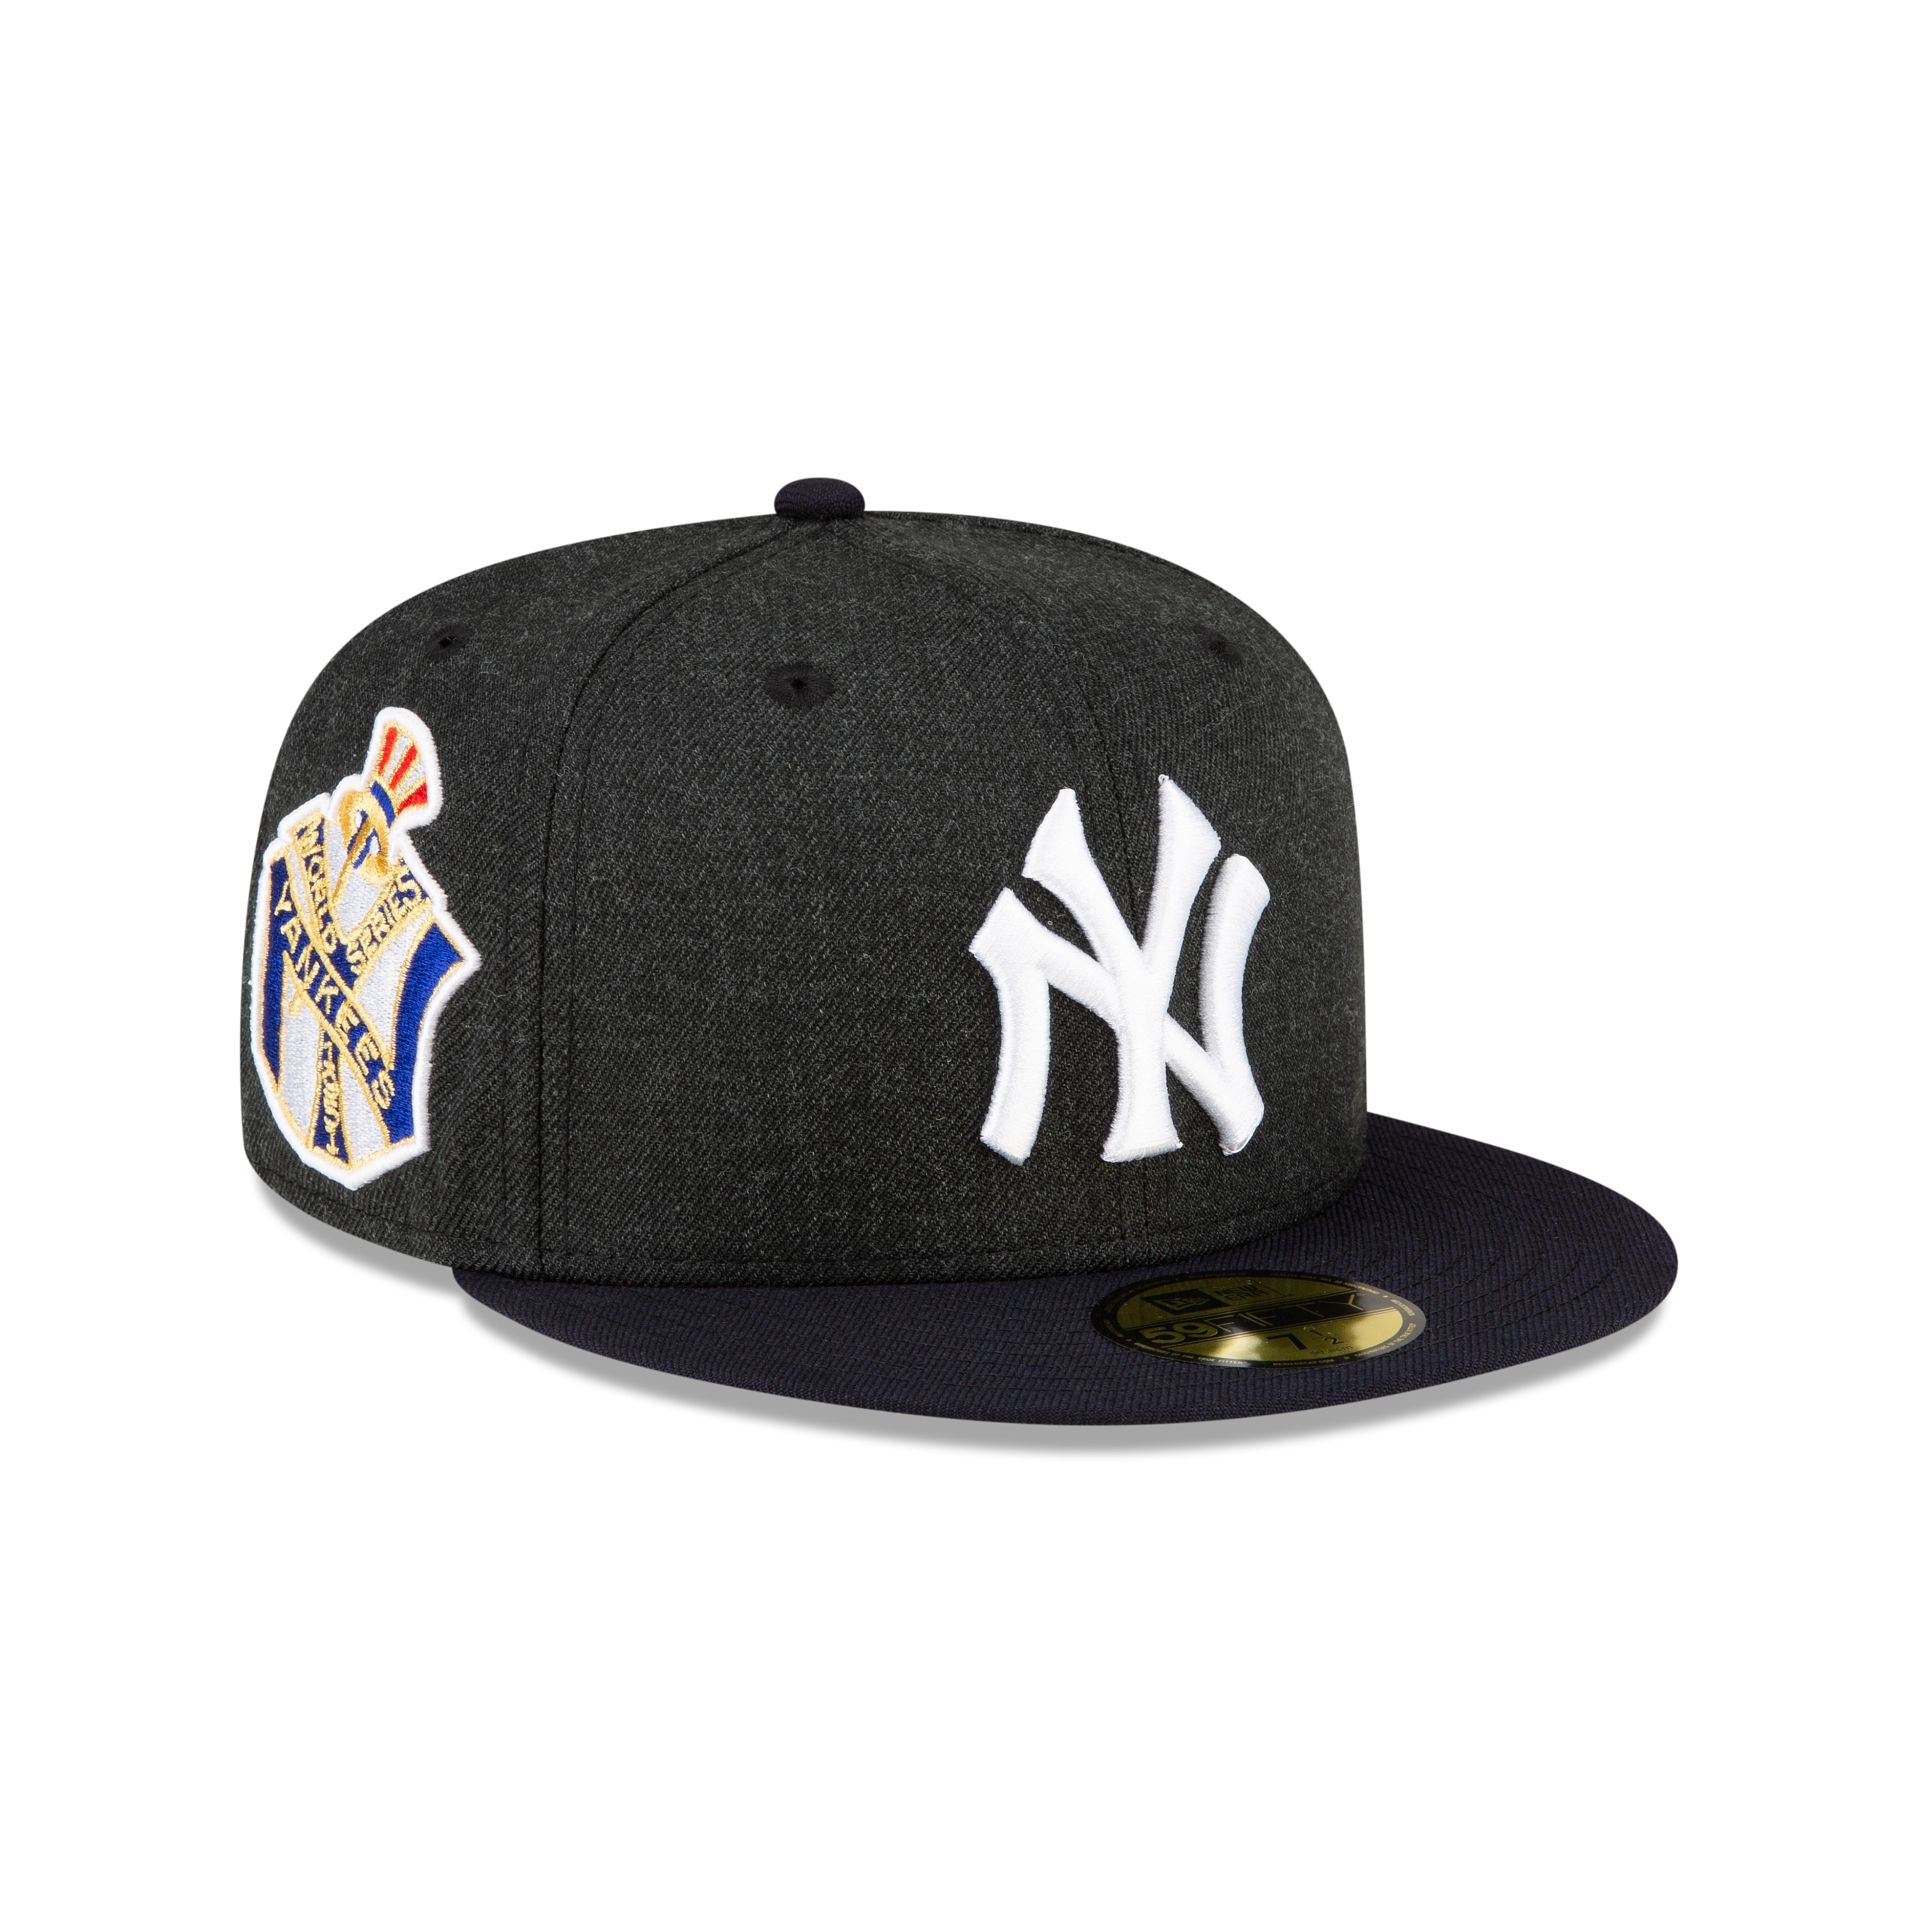 Gorra New Era New York Yankees 59FIFTY estilo cerrado New Era